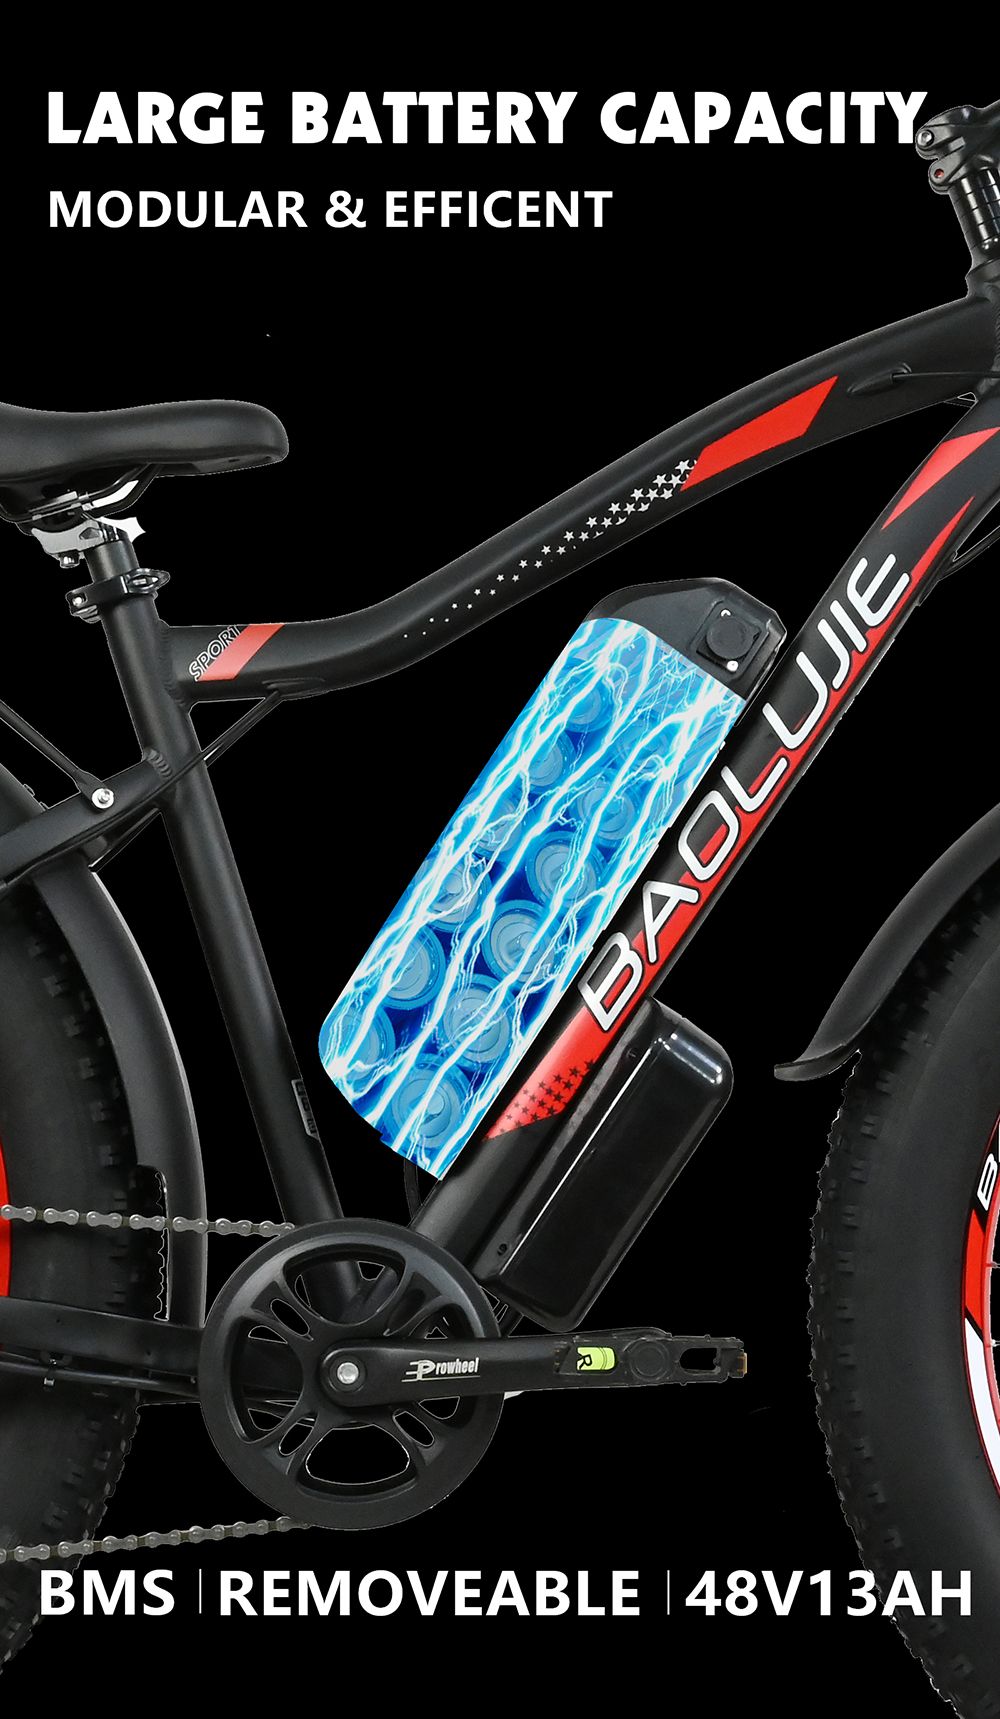 BAOLUJIE DP2619 elektromos kerékpár, 26 * 4.0 hüvelykes Fat Tire 750 W motor 48 V 13 Ah Akkumulátor 45 km/h Max sebesség 45 km Maximális hatótáv SHIMANO 7 sebességes LCD kijelző - kék